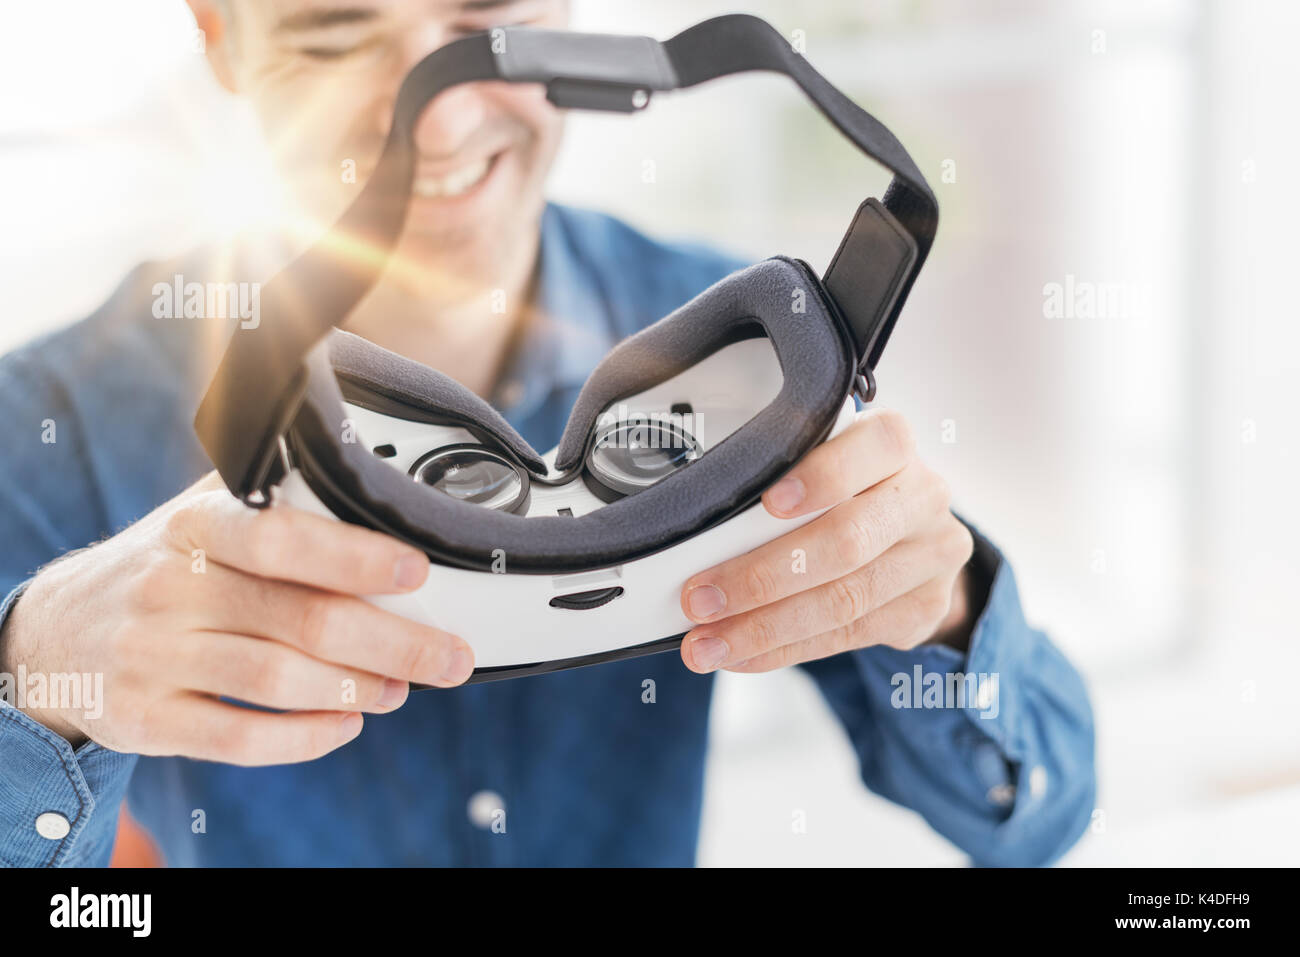 Hombre sujetando un casco de realidad virtual y sonriente, innovador concepto de tecnología Foto de stock